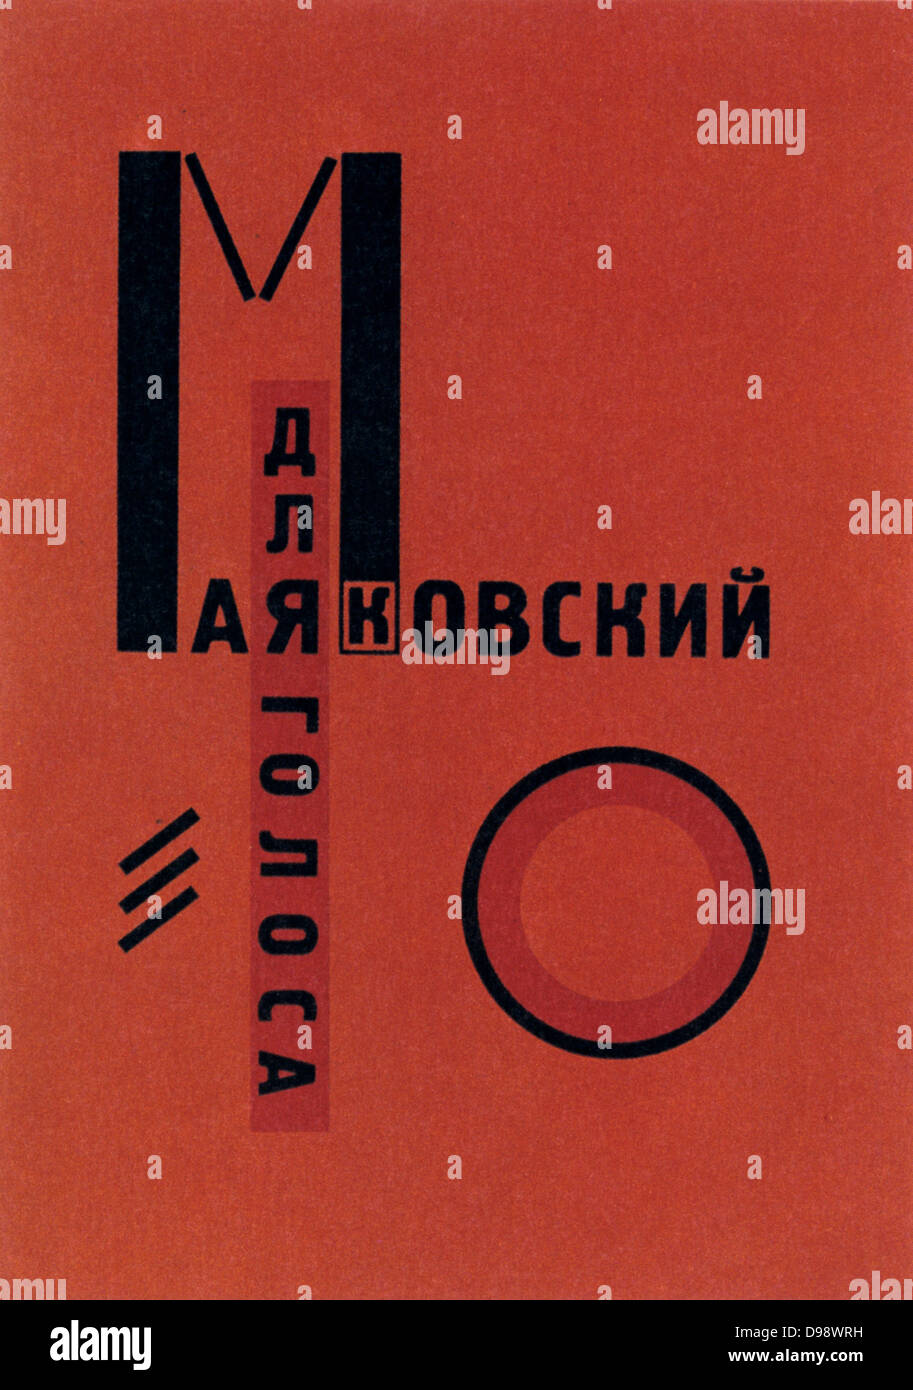 Diseño por Lissitzky Lazar para la tapa de un libro por el Vladimir Mayakovsky, 1923. Rusia URSS comunista comunismo abstracto geométrico Foto de stock